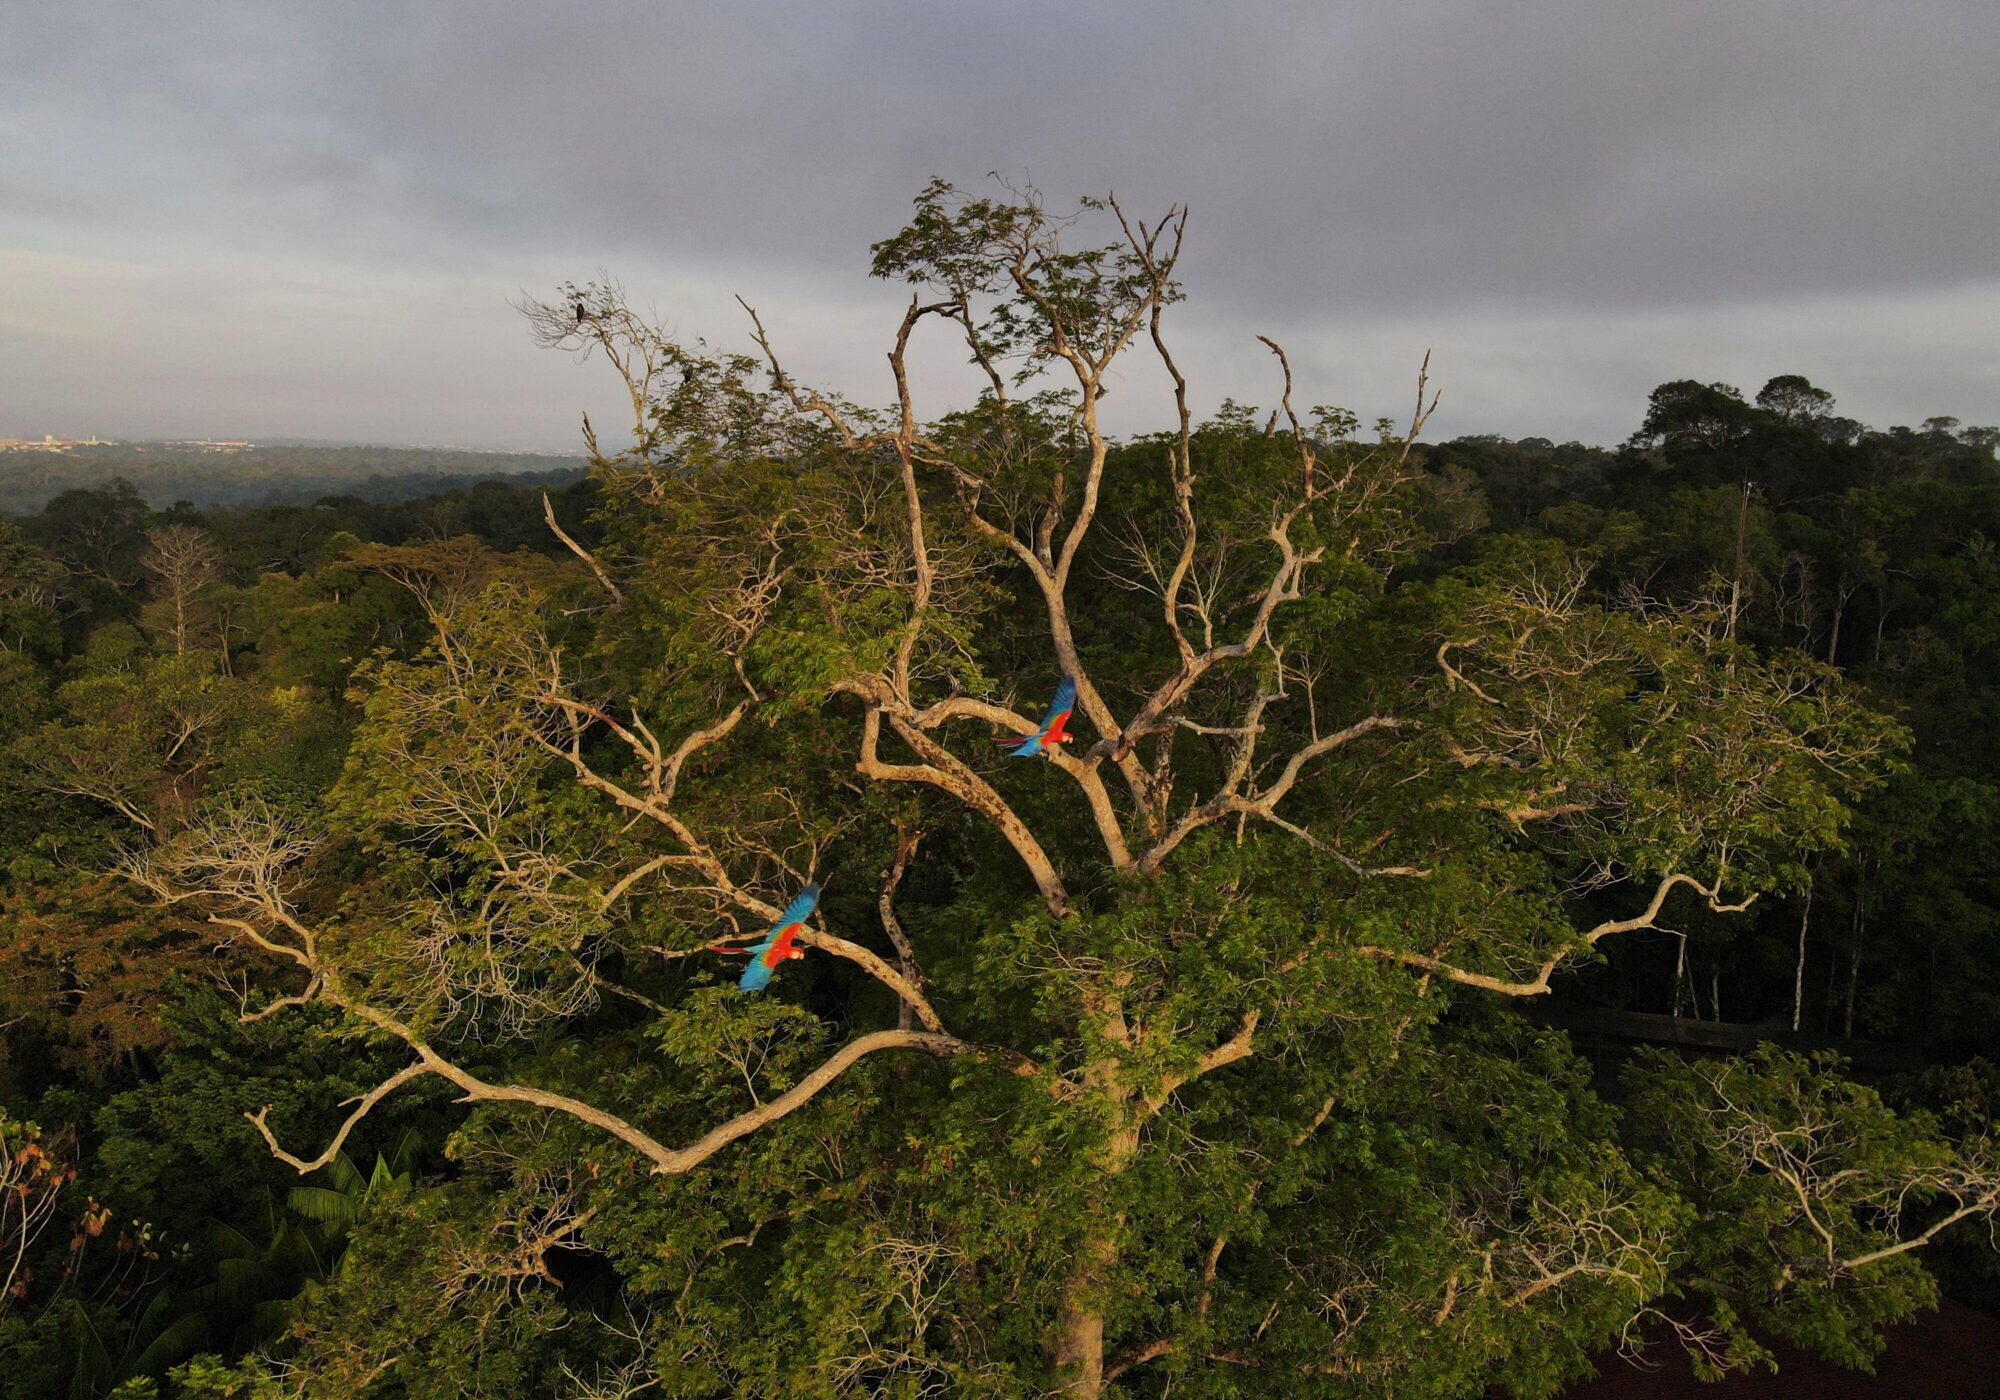 <p><span style="font-weight: 400;">Guacamayos sobrevuelan la selva amazónica en Manaos, Brasil. En 2023, el mundo estará pendiente de la relación del presidente Lula da Silva con China, que podría resultar crucial para revertir la deforestación en la Amazonía (Imagen: Bruno Kelly / Alamy)</span></p>